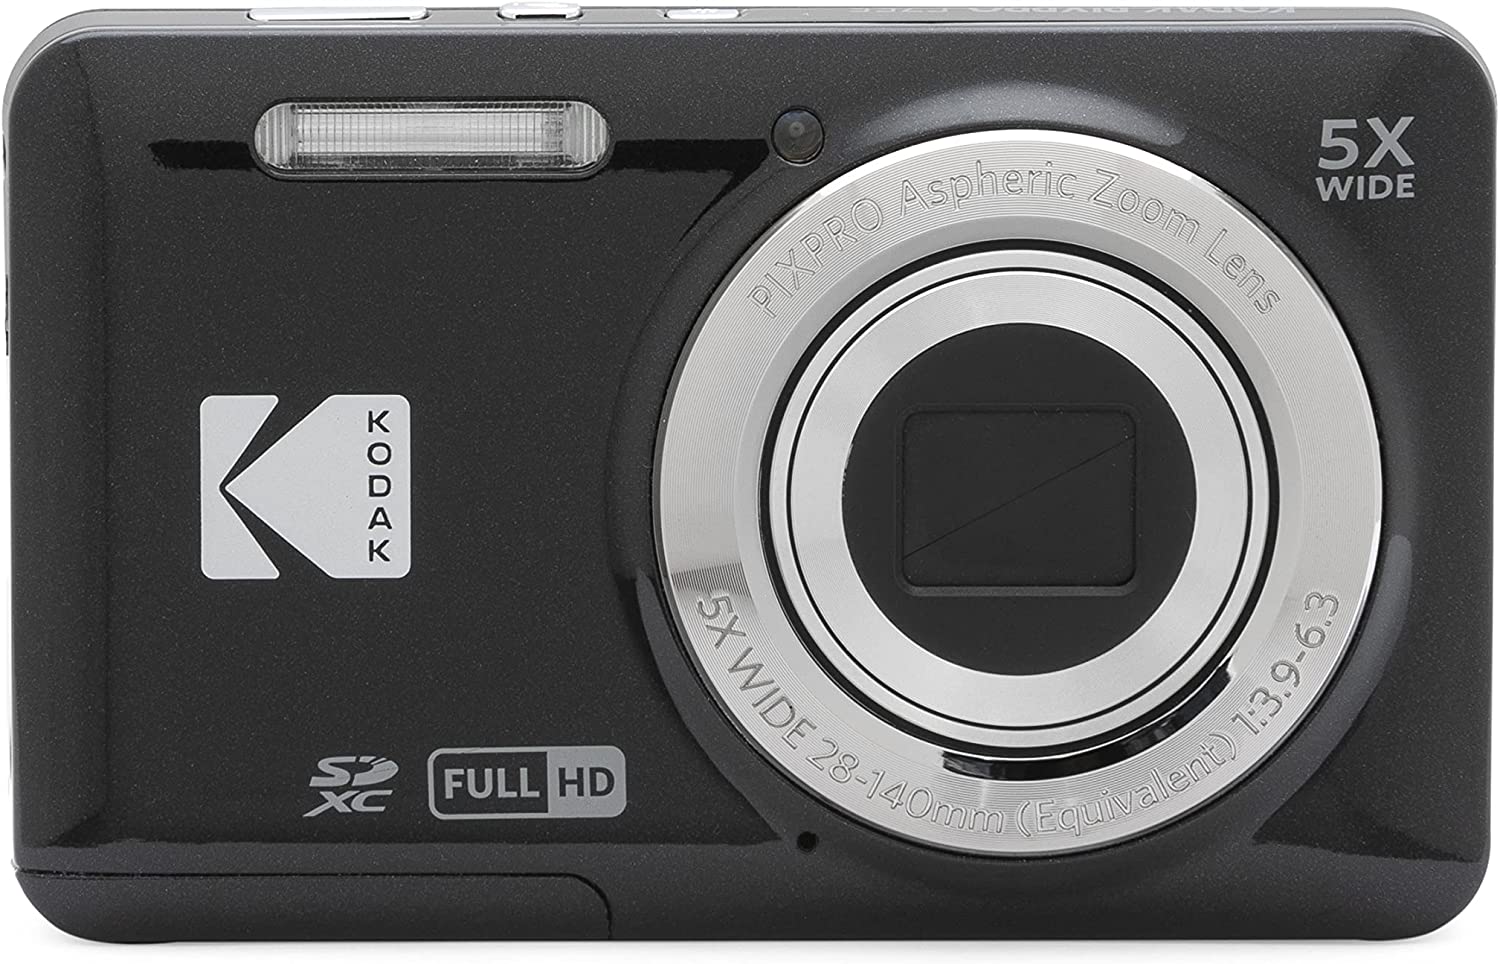 Specifikationer för Kodak Pixpro FZ55